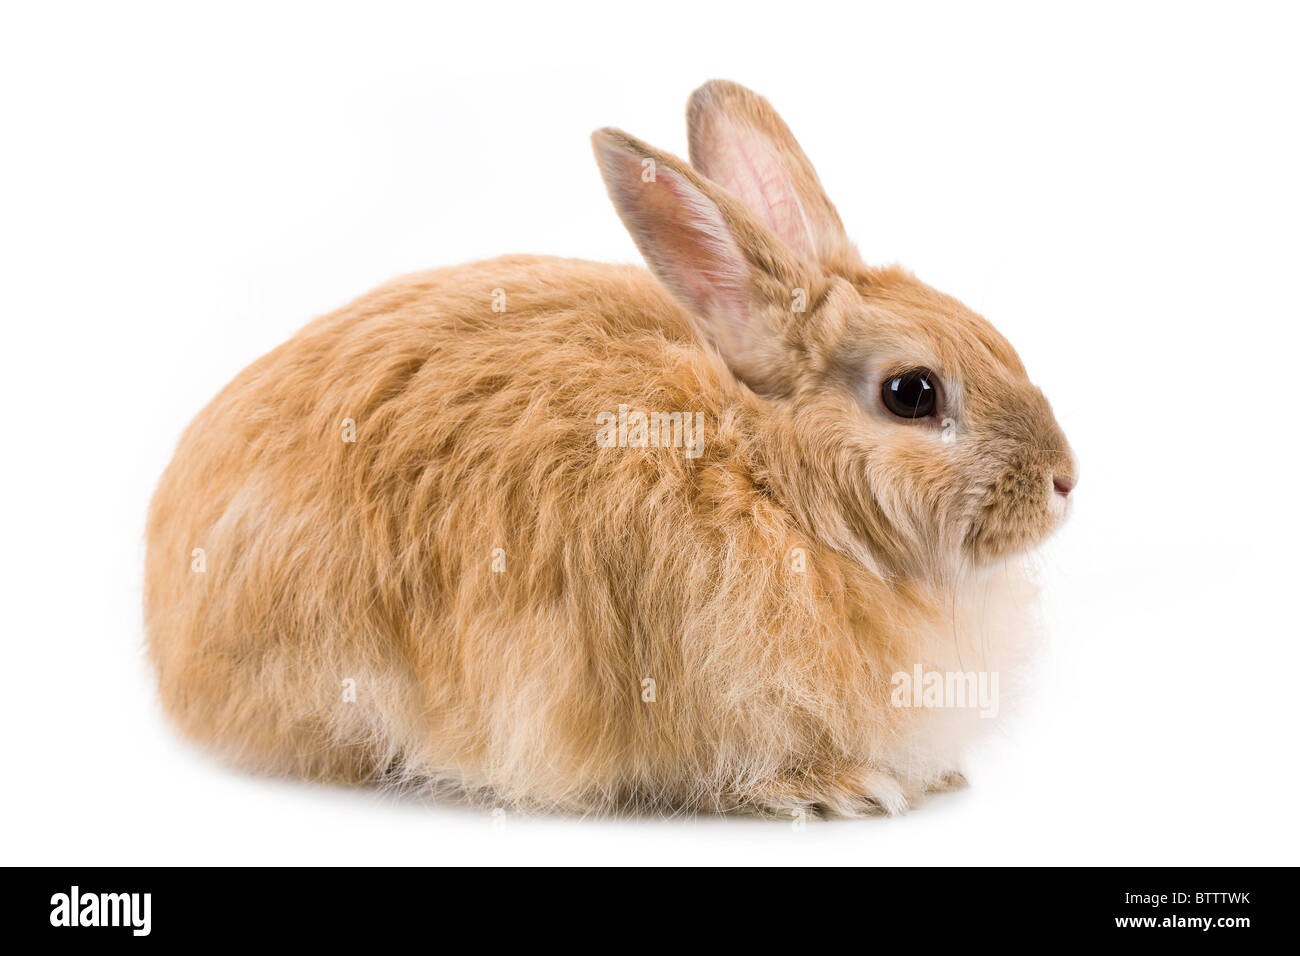 Immagine del coniglio prudente su sfondo bianco in isolamento Foto Stock